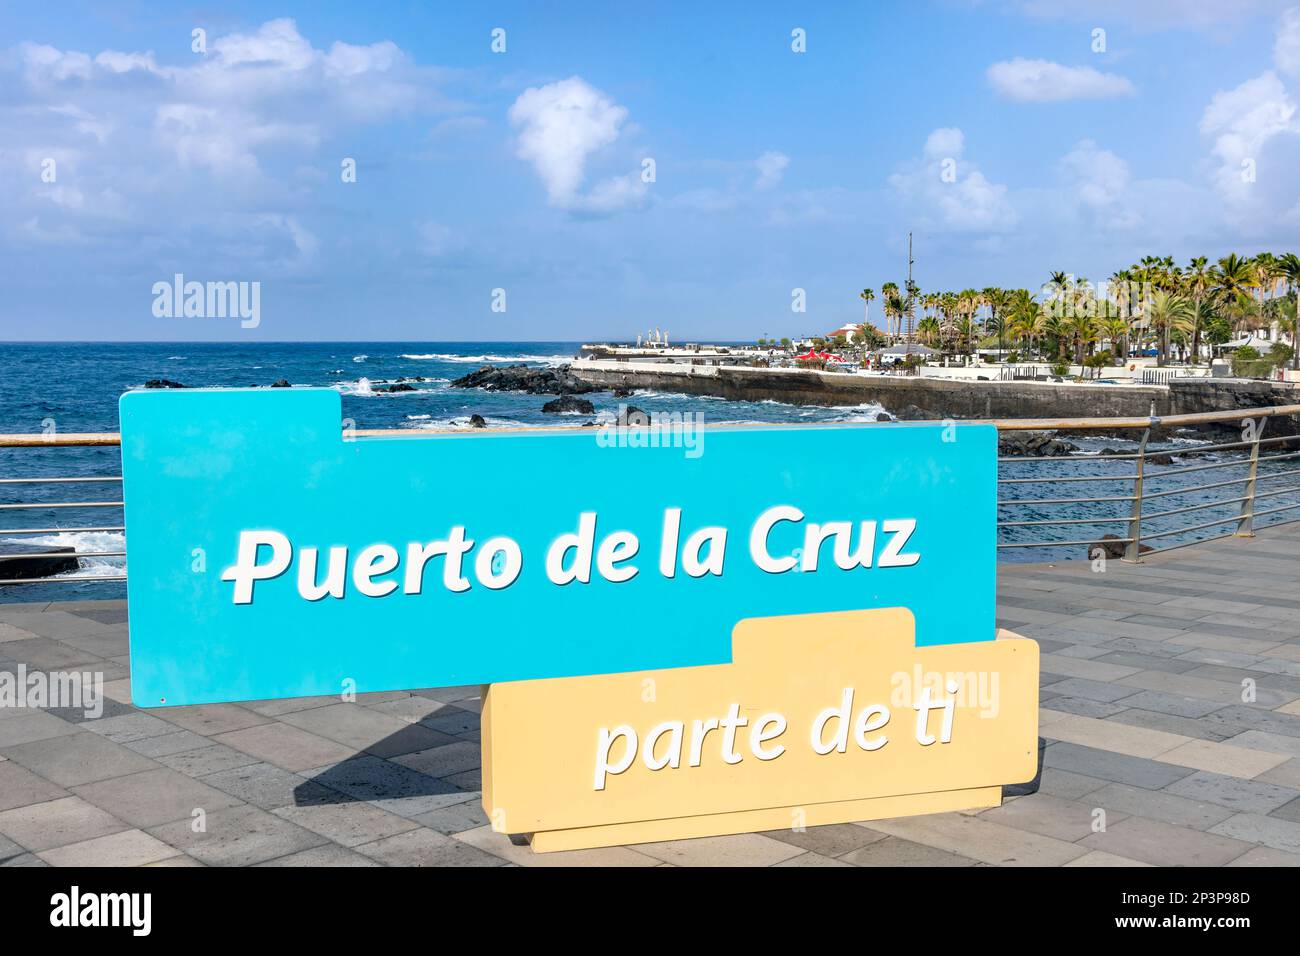 Panneau sur le front de mer à Puerto de la Cruz, îles Canaries. Inscription: Puerto de la Cruz - partie de vous Banque D'Images